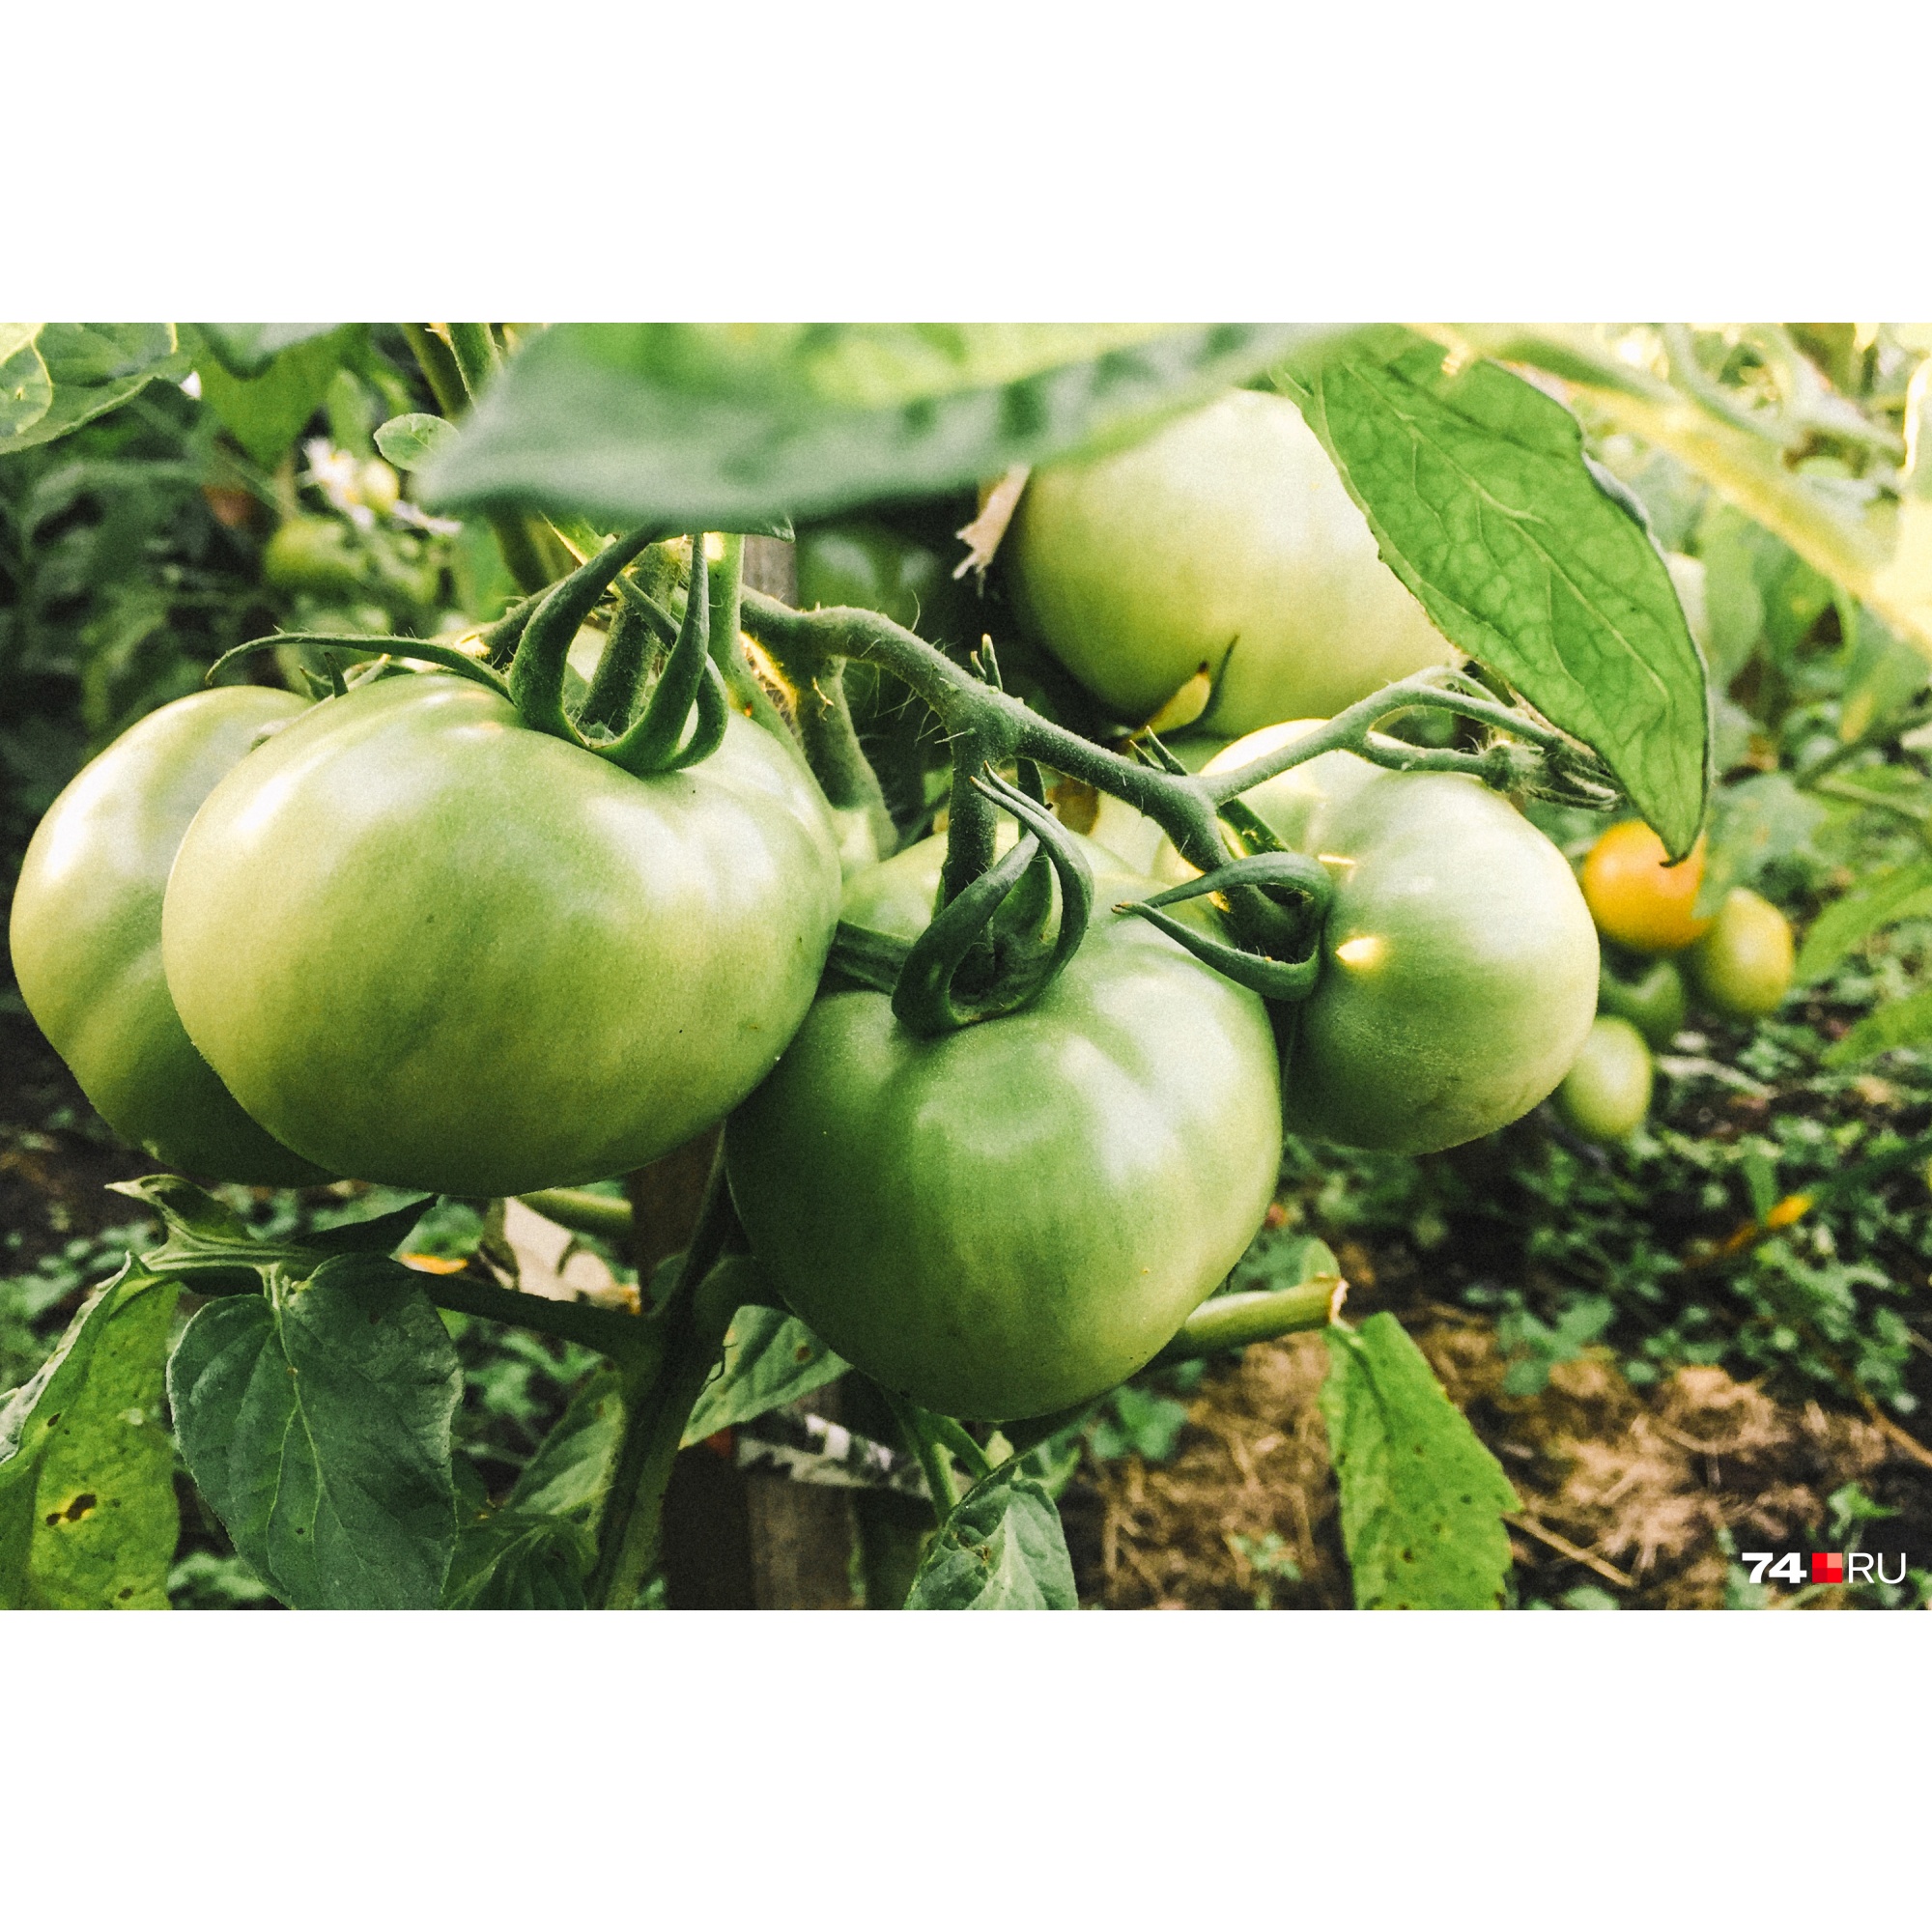 Принято считать, что срывать зеленые помидоры и оставлять их дозревать — нормально. Но это не совсем правильно